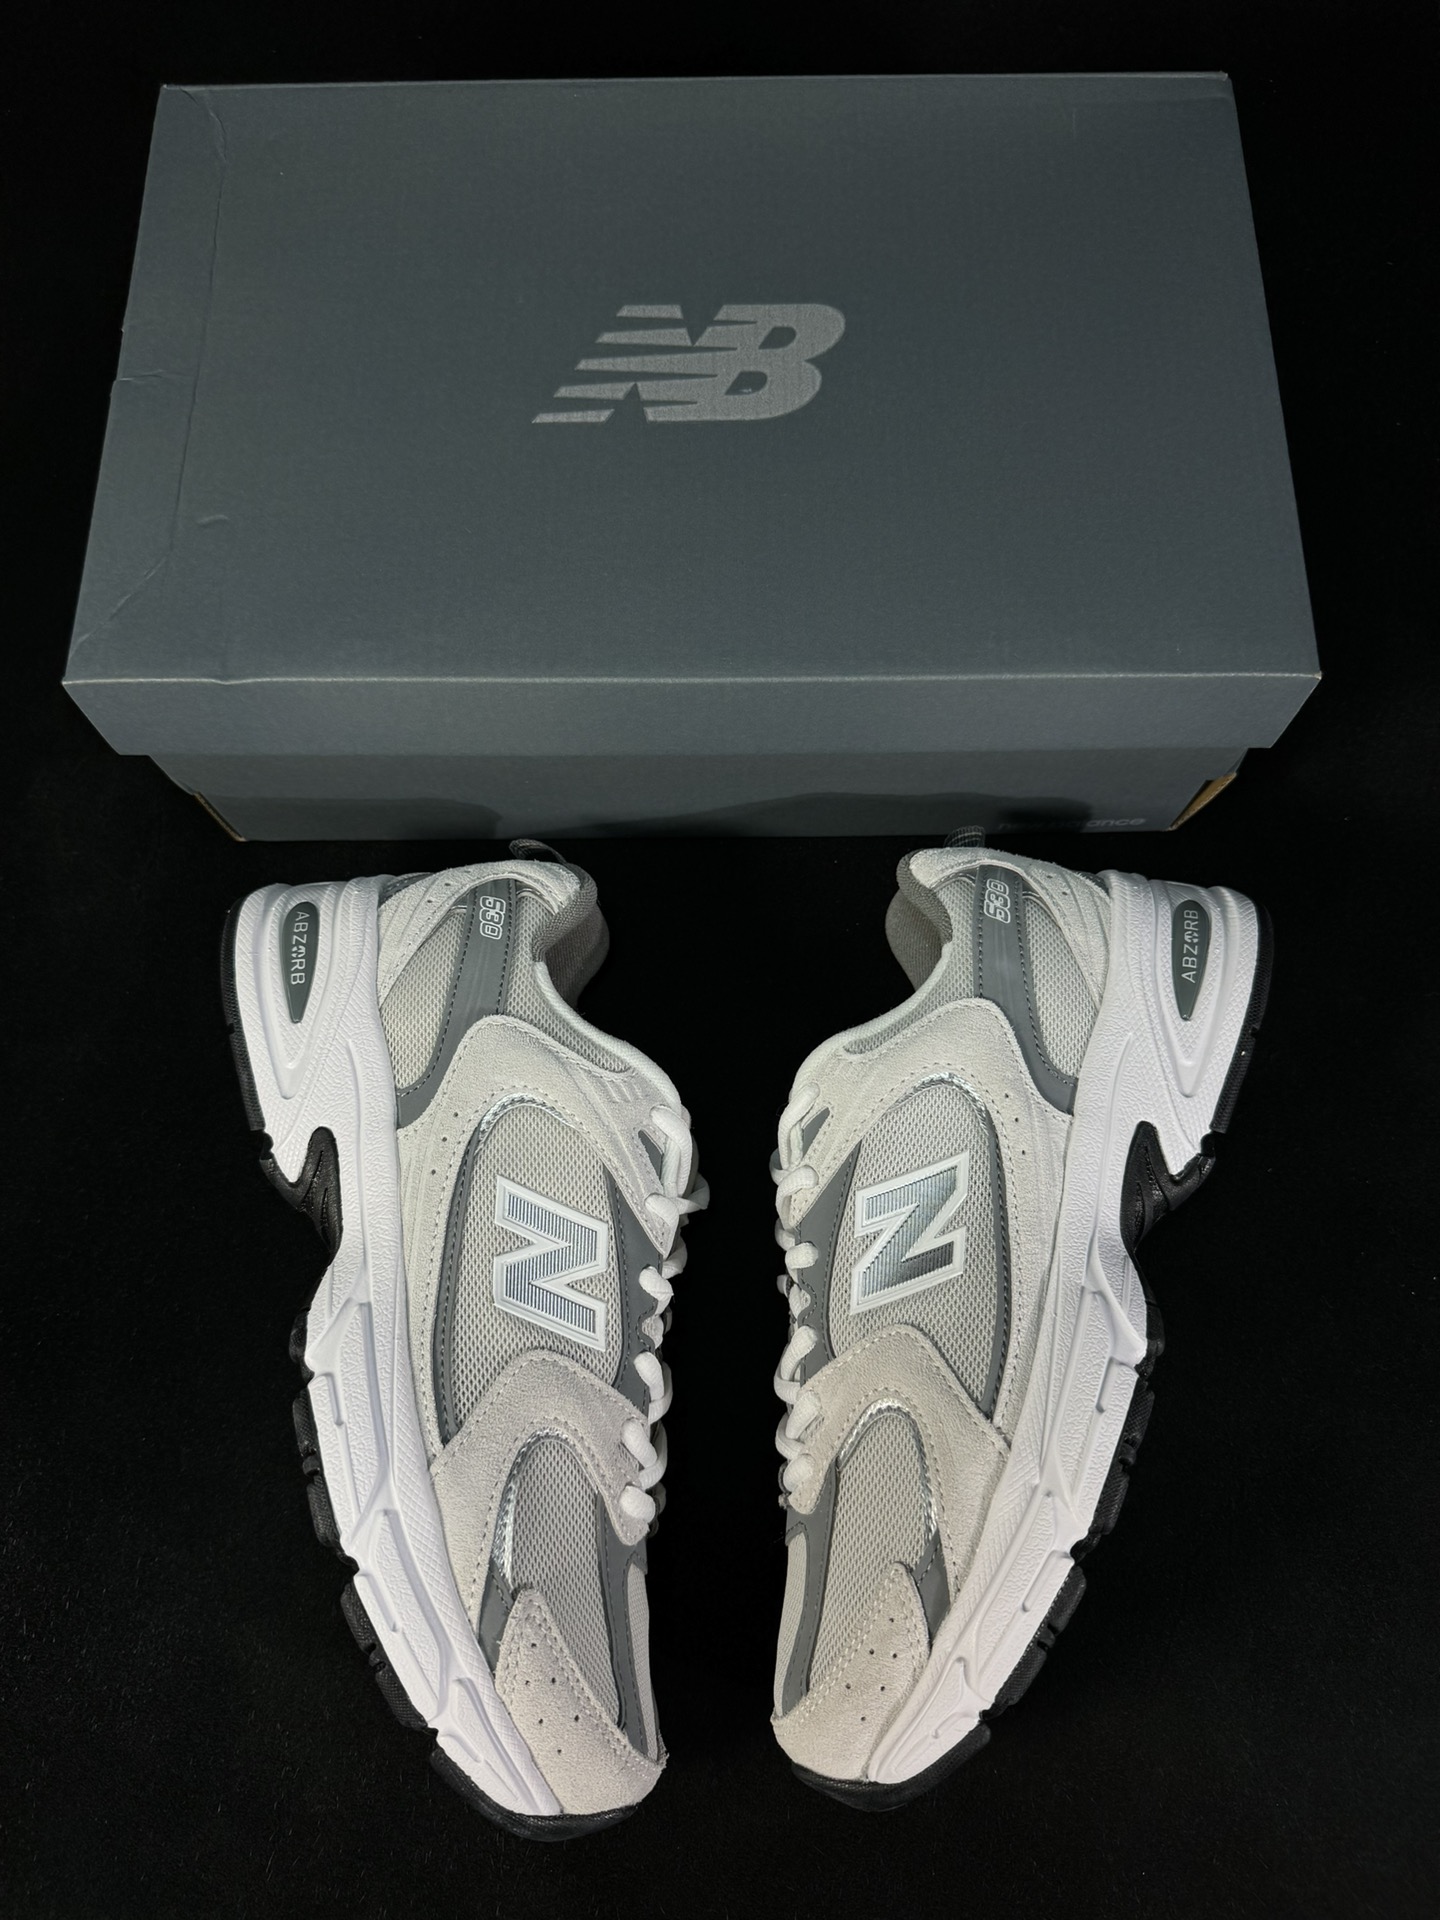 过验级NB530灰色历时两月重新开版精准还原流线鞋型鞋头正确皮料区分市场软超纤独家使用定型工艺鞋型还原度